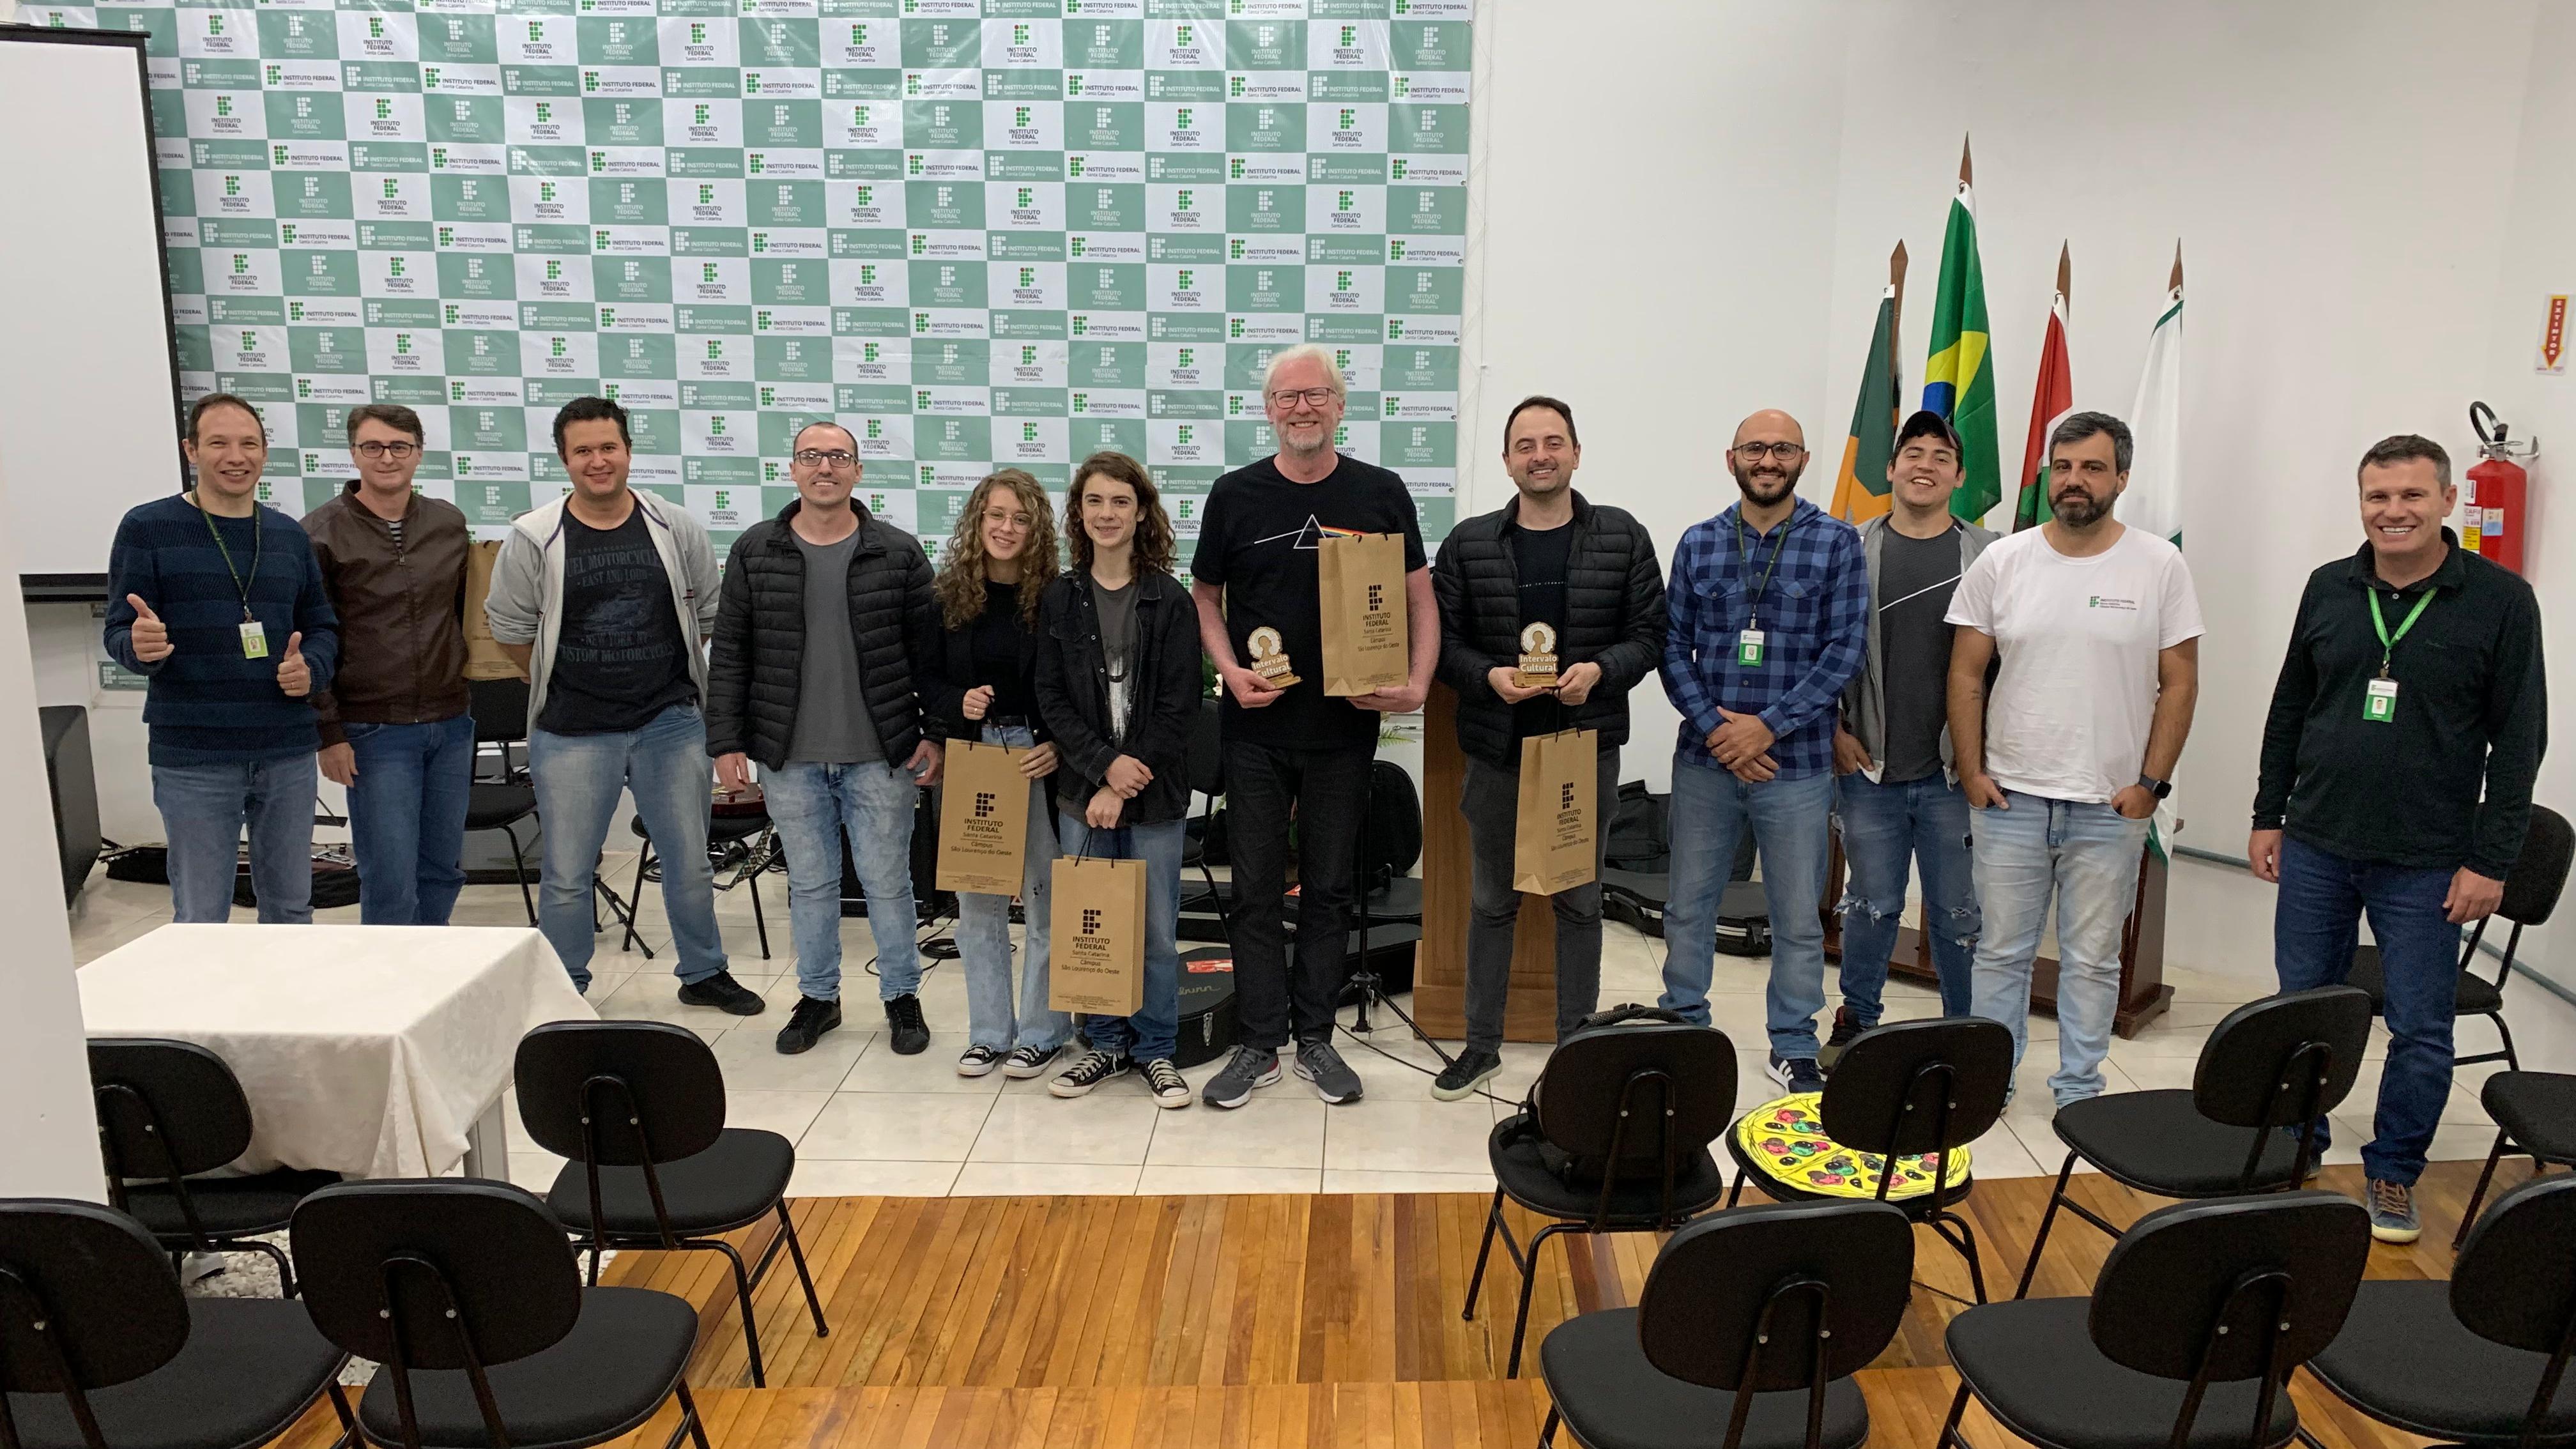 Agradecimento ao Instituto Cultural de São Lourenço e a equipe vencedora dos Jogos (Veteran Squad, formada por estudantes do técnico em Desenvolvimento de Sistemas)